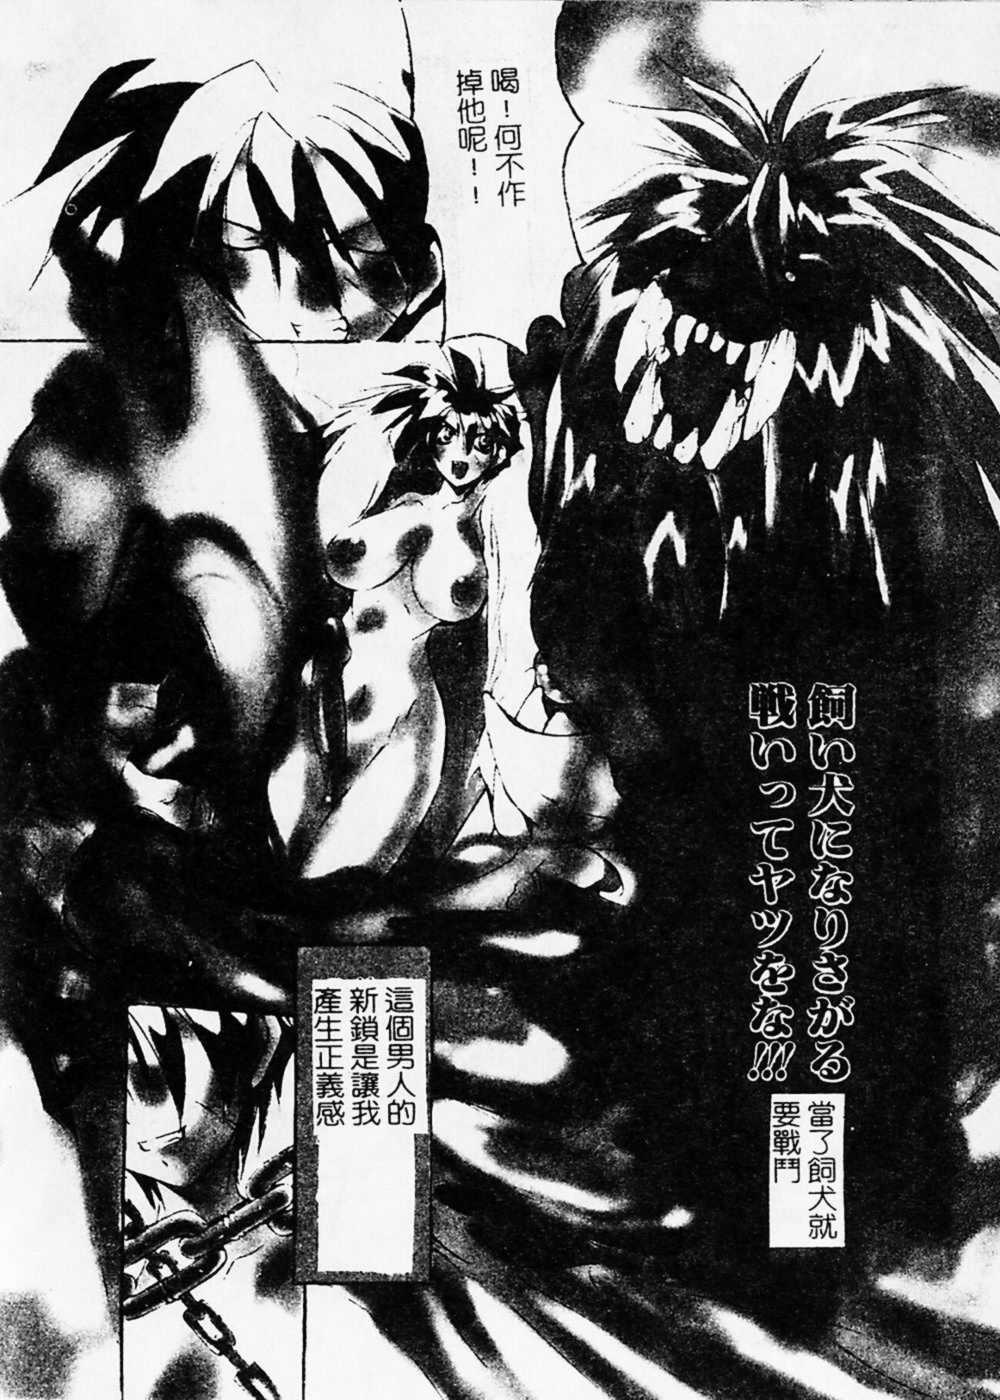 nagitoh mikoshiro - Black Mass 02 (Chinese) [巫代凪遠] 収穫祭2 (中文)